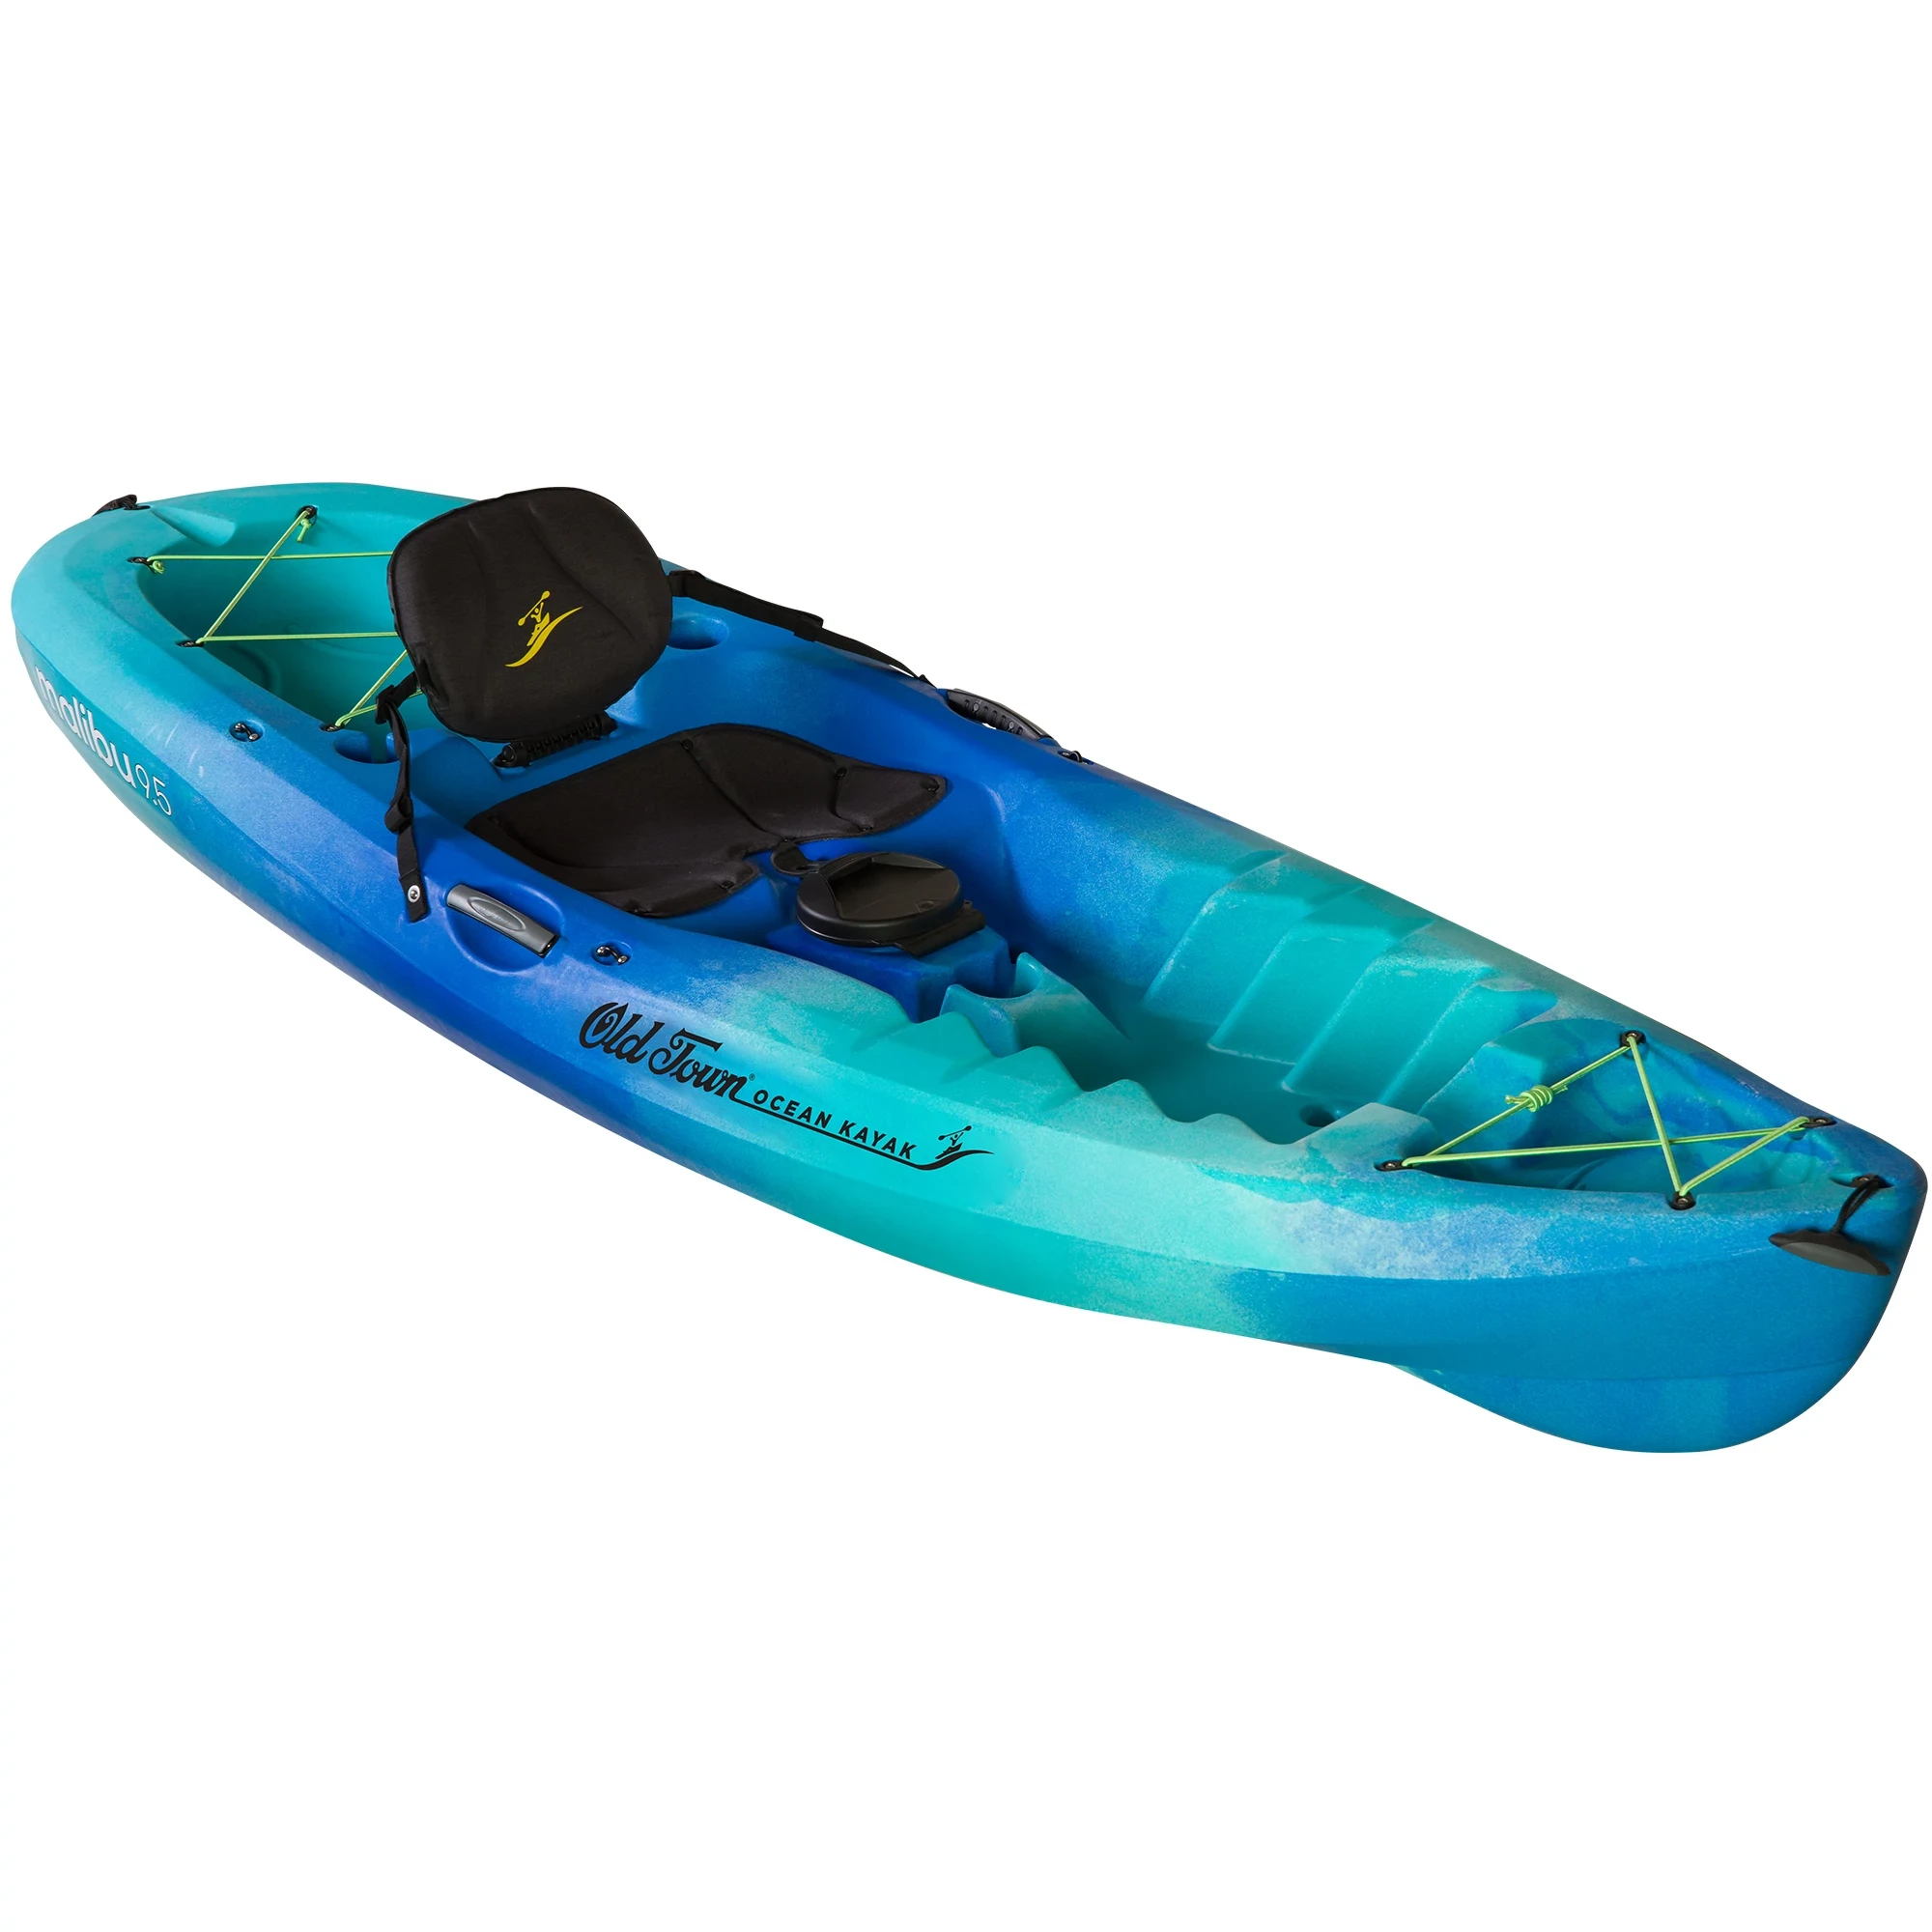 Ocean Kayak Malibu 9.5 - Seaglass - Angled View